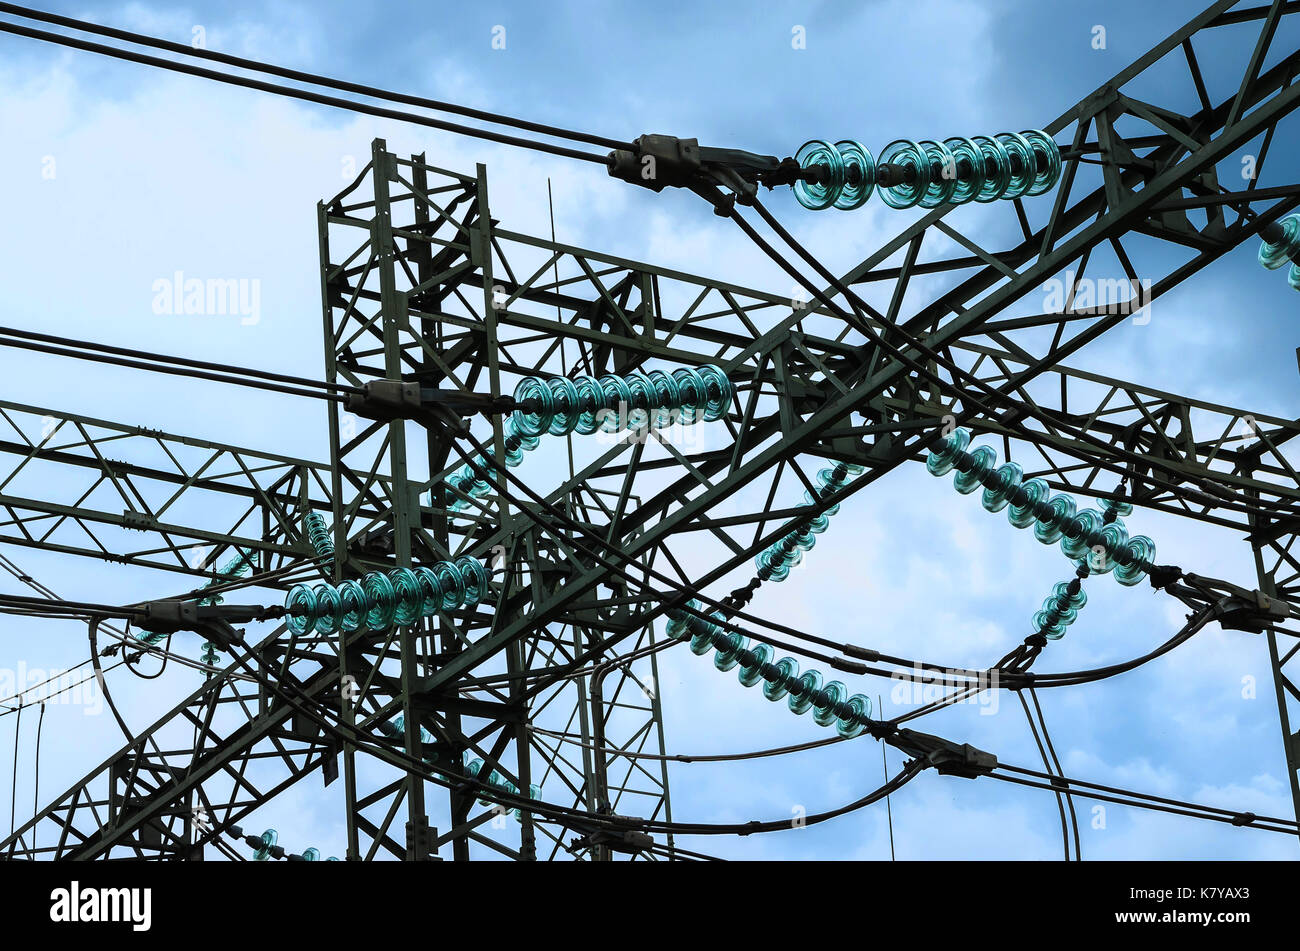 electricity transmission pylon Stock Photo